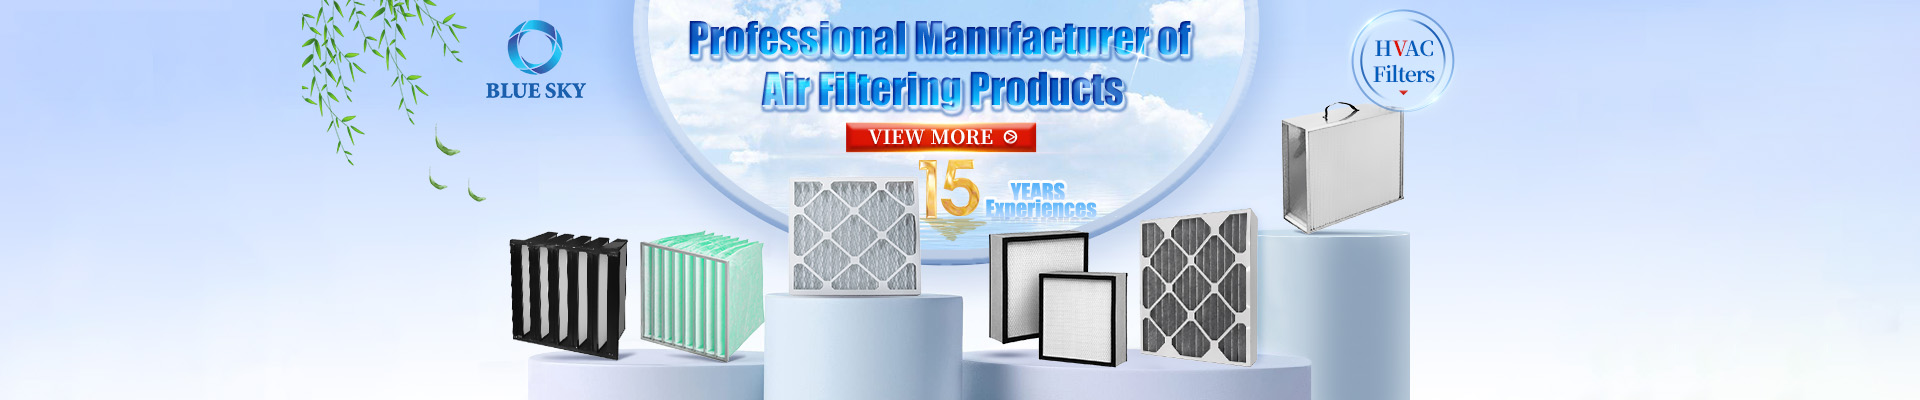 Blue Sky Профессиональный производитель продуктов для фильтрации воздуха